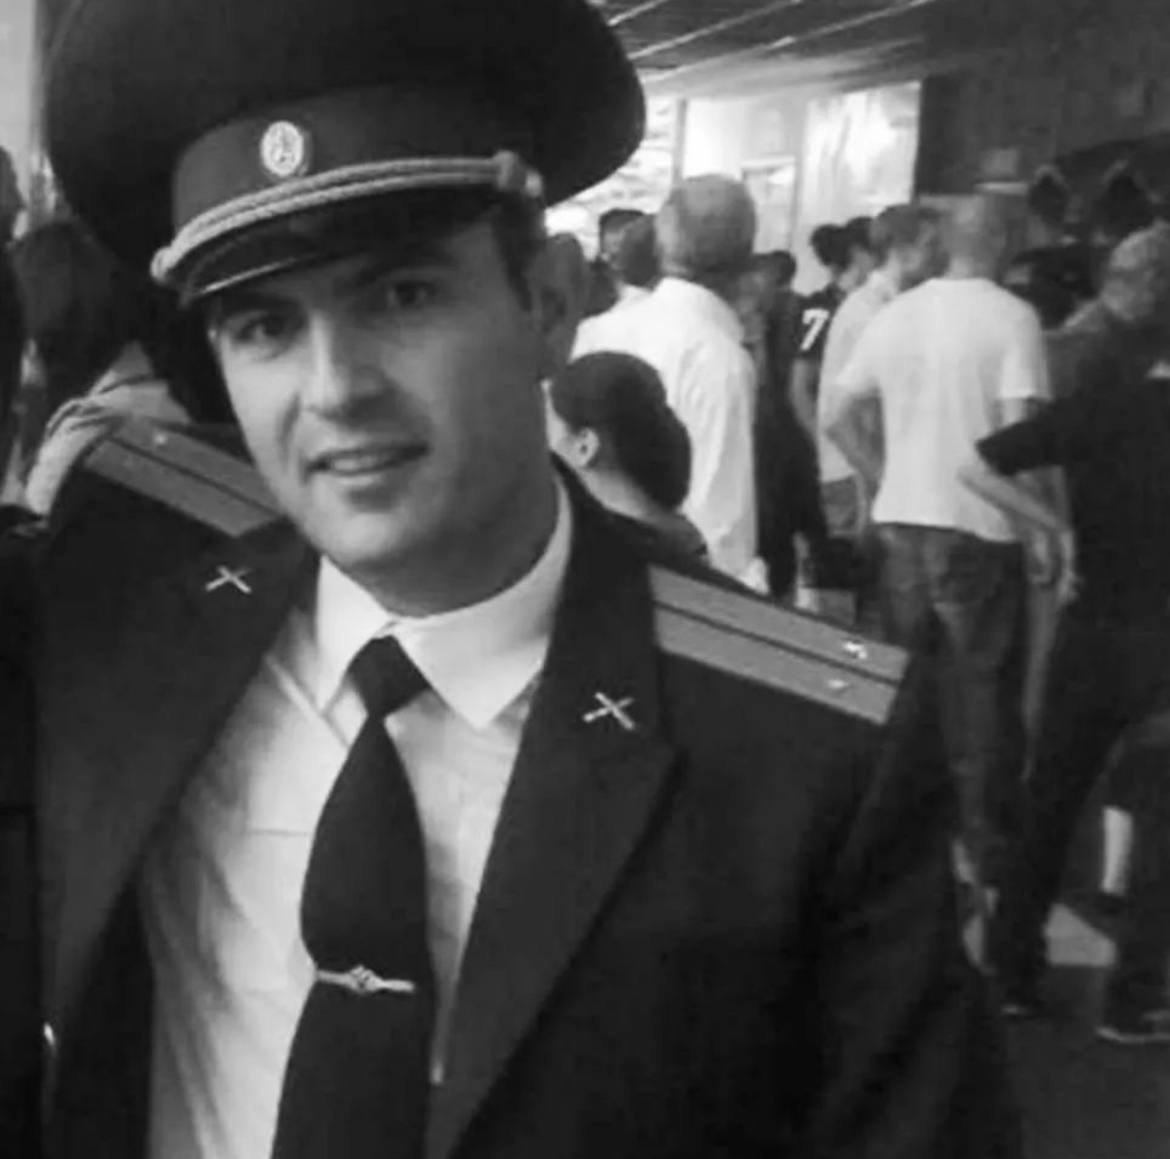 Погибший на Украине военнослужащий Георгий Гагиев